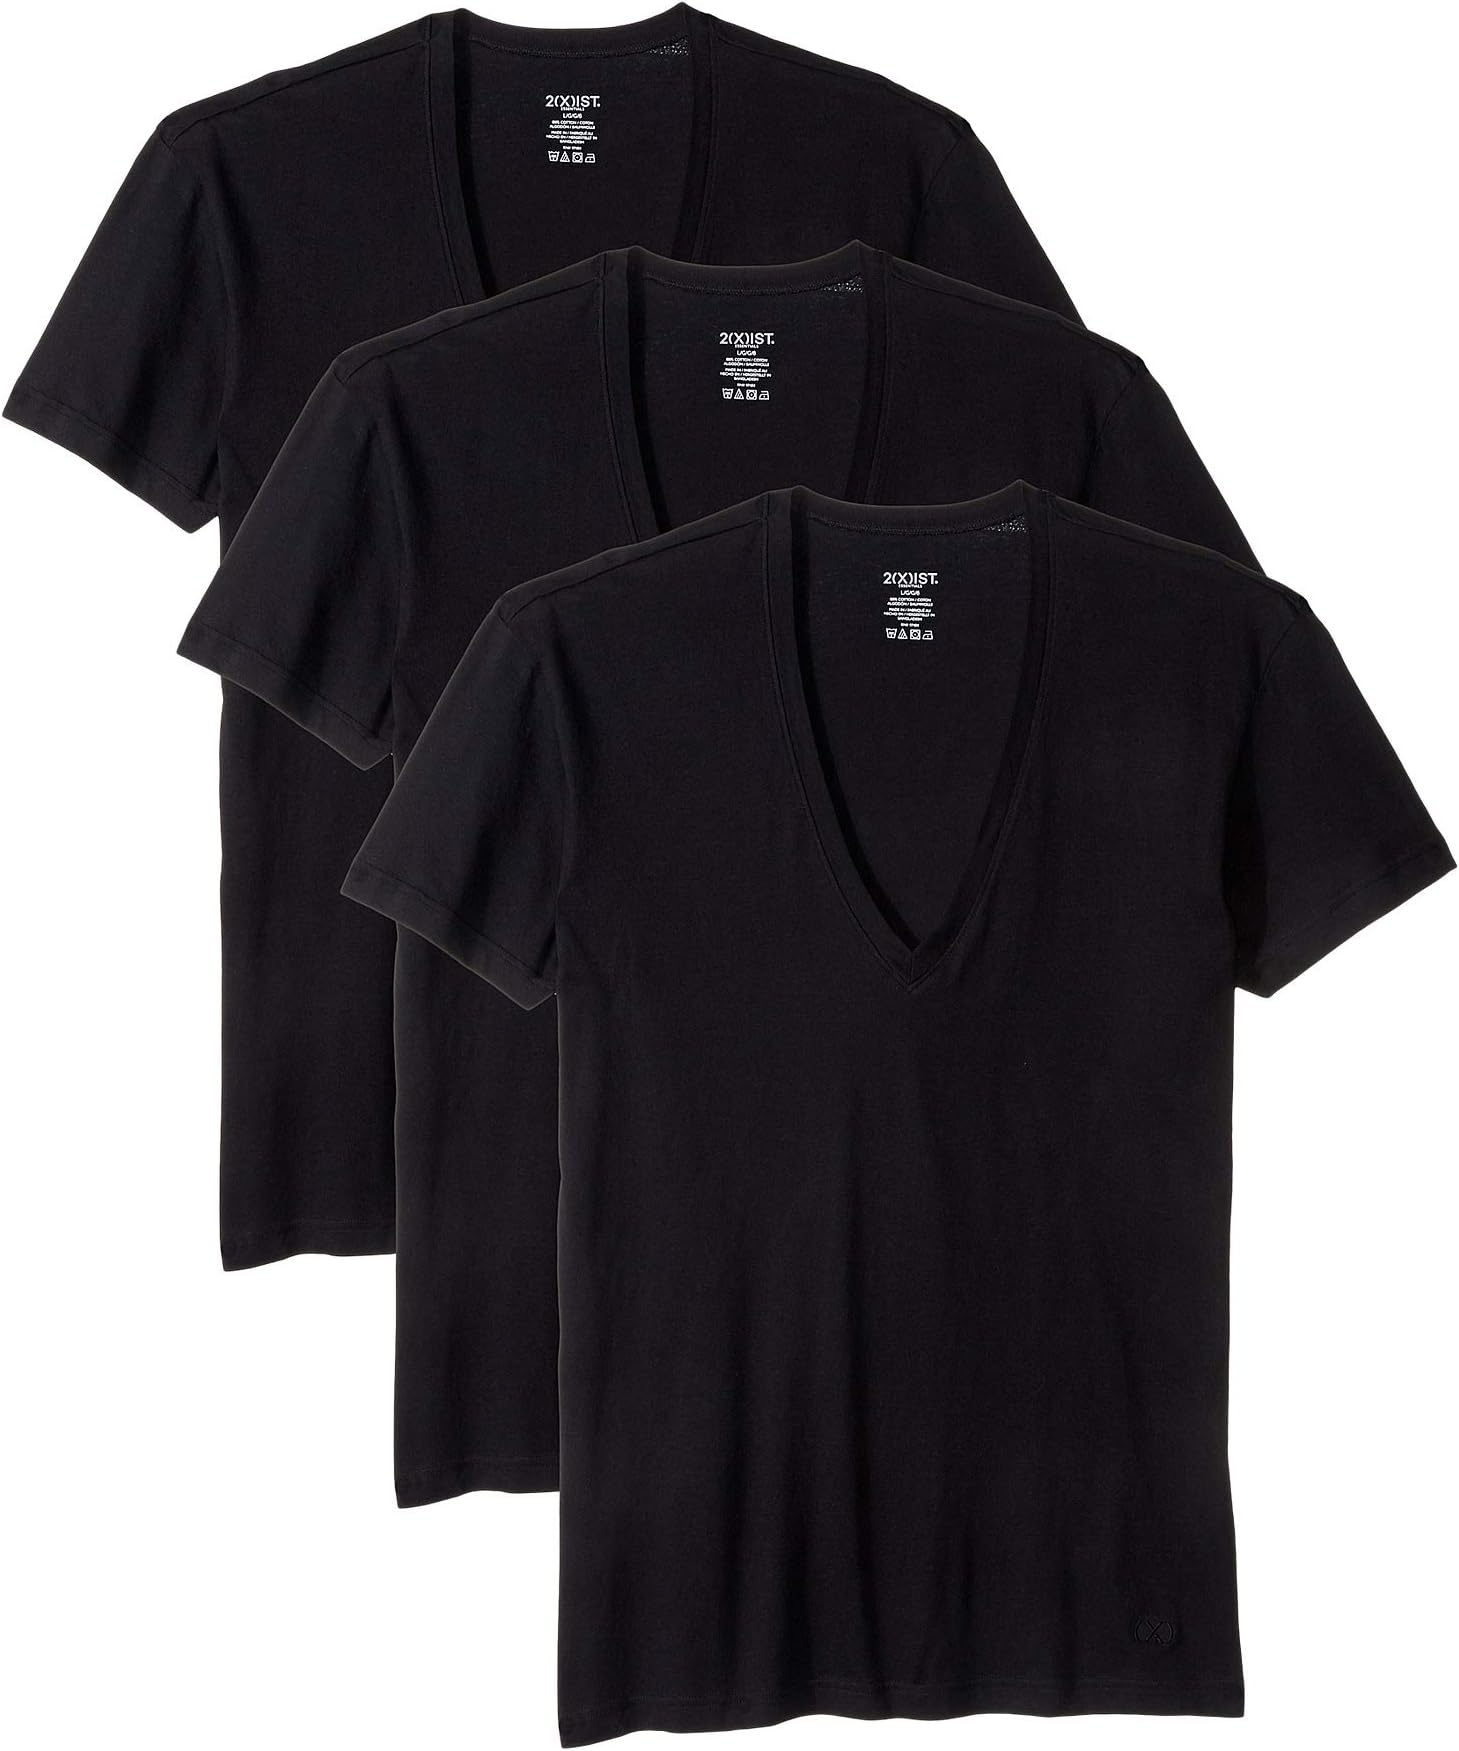 Комплект из трех футболок приталенного кроя с глубоким v-образным вырезом Essential 2(X)IST, черный